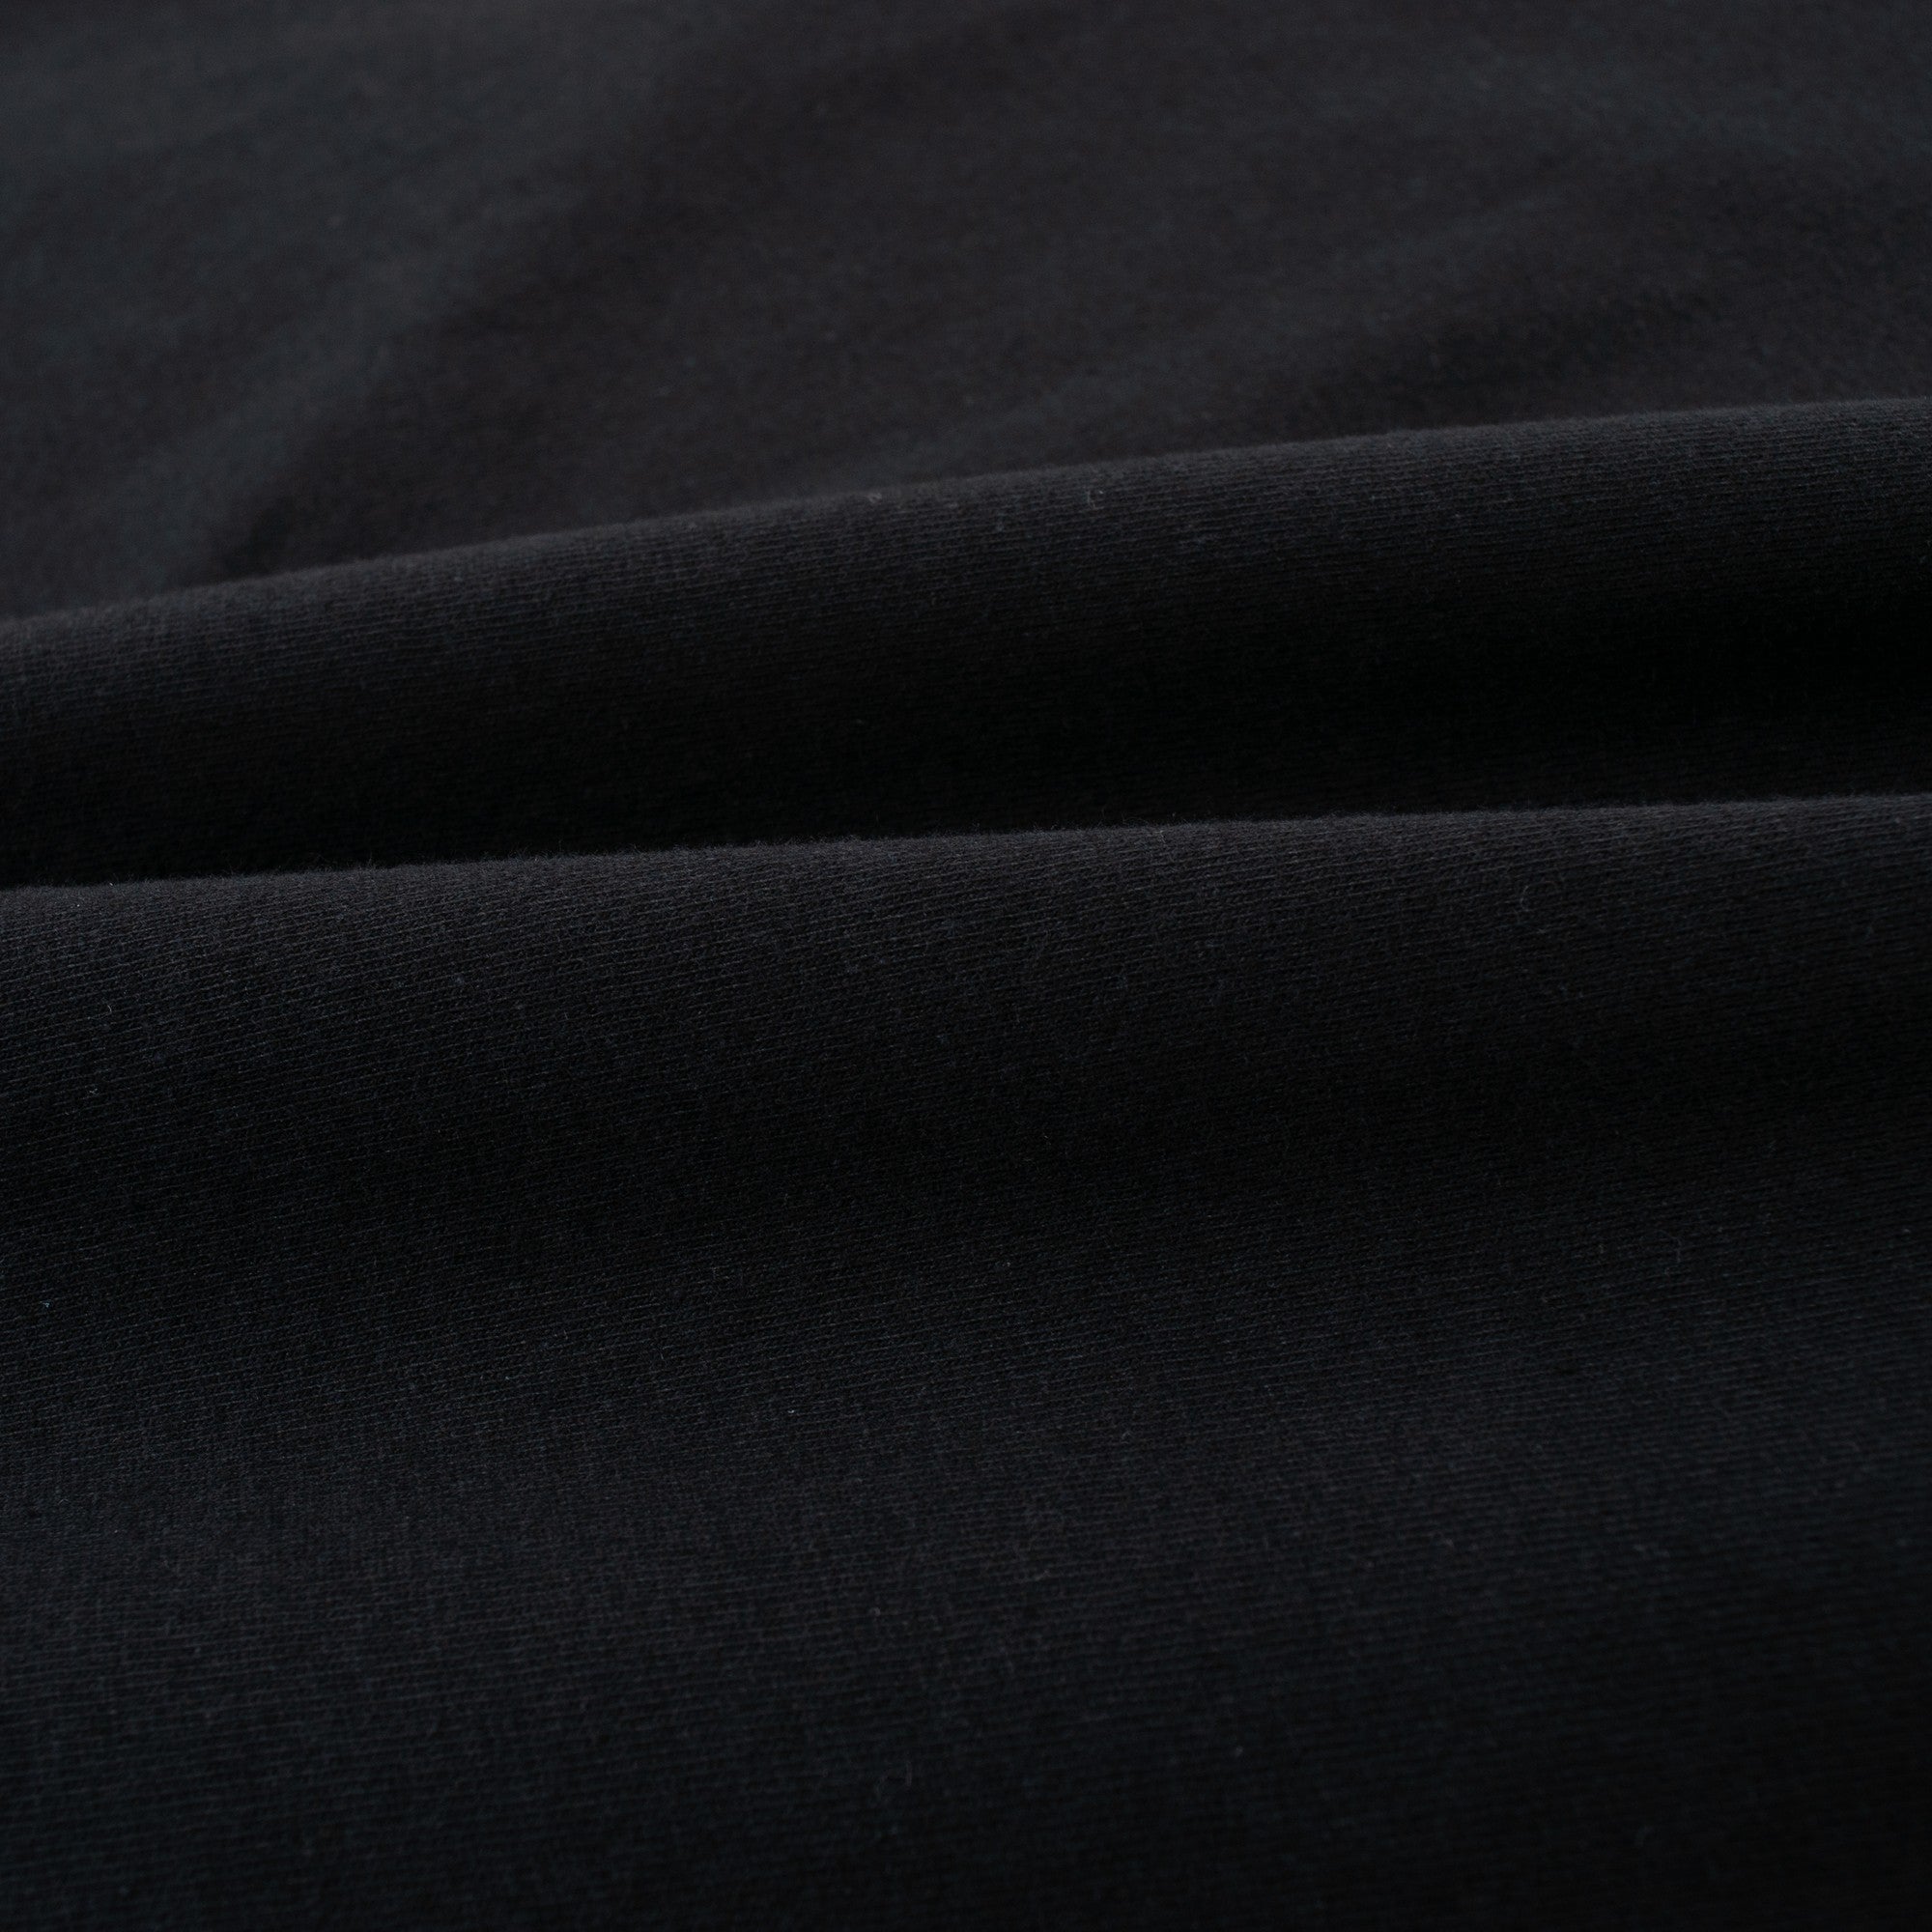 【特価Sサイズのみ】HILLTON RICH(ヒルトンリッチ）メンズ カットソー  H刺繍Tシャツ　black×orange